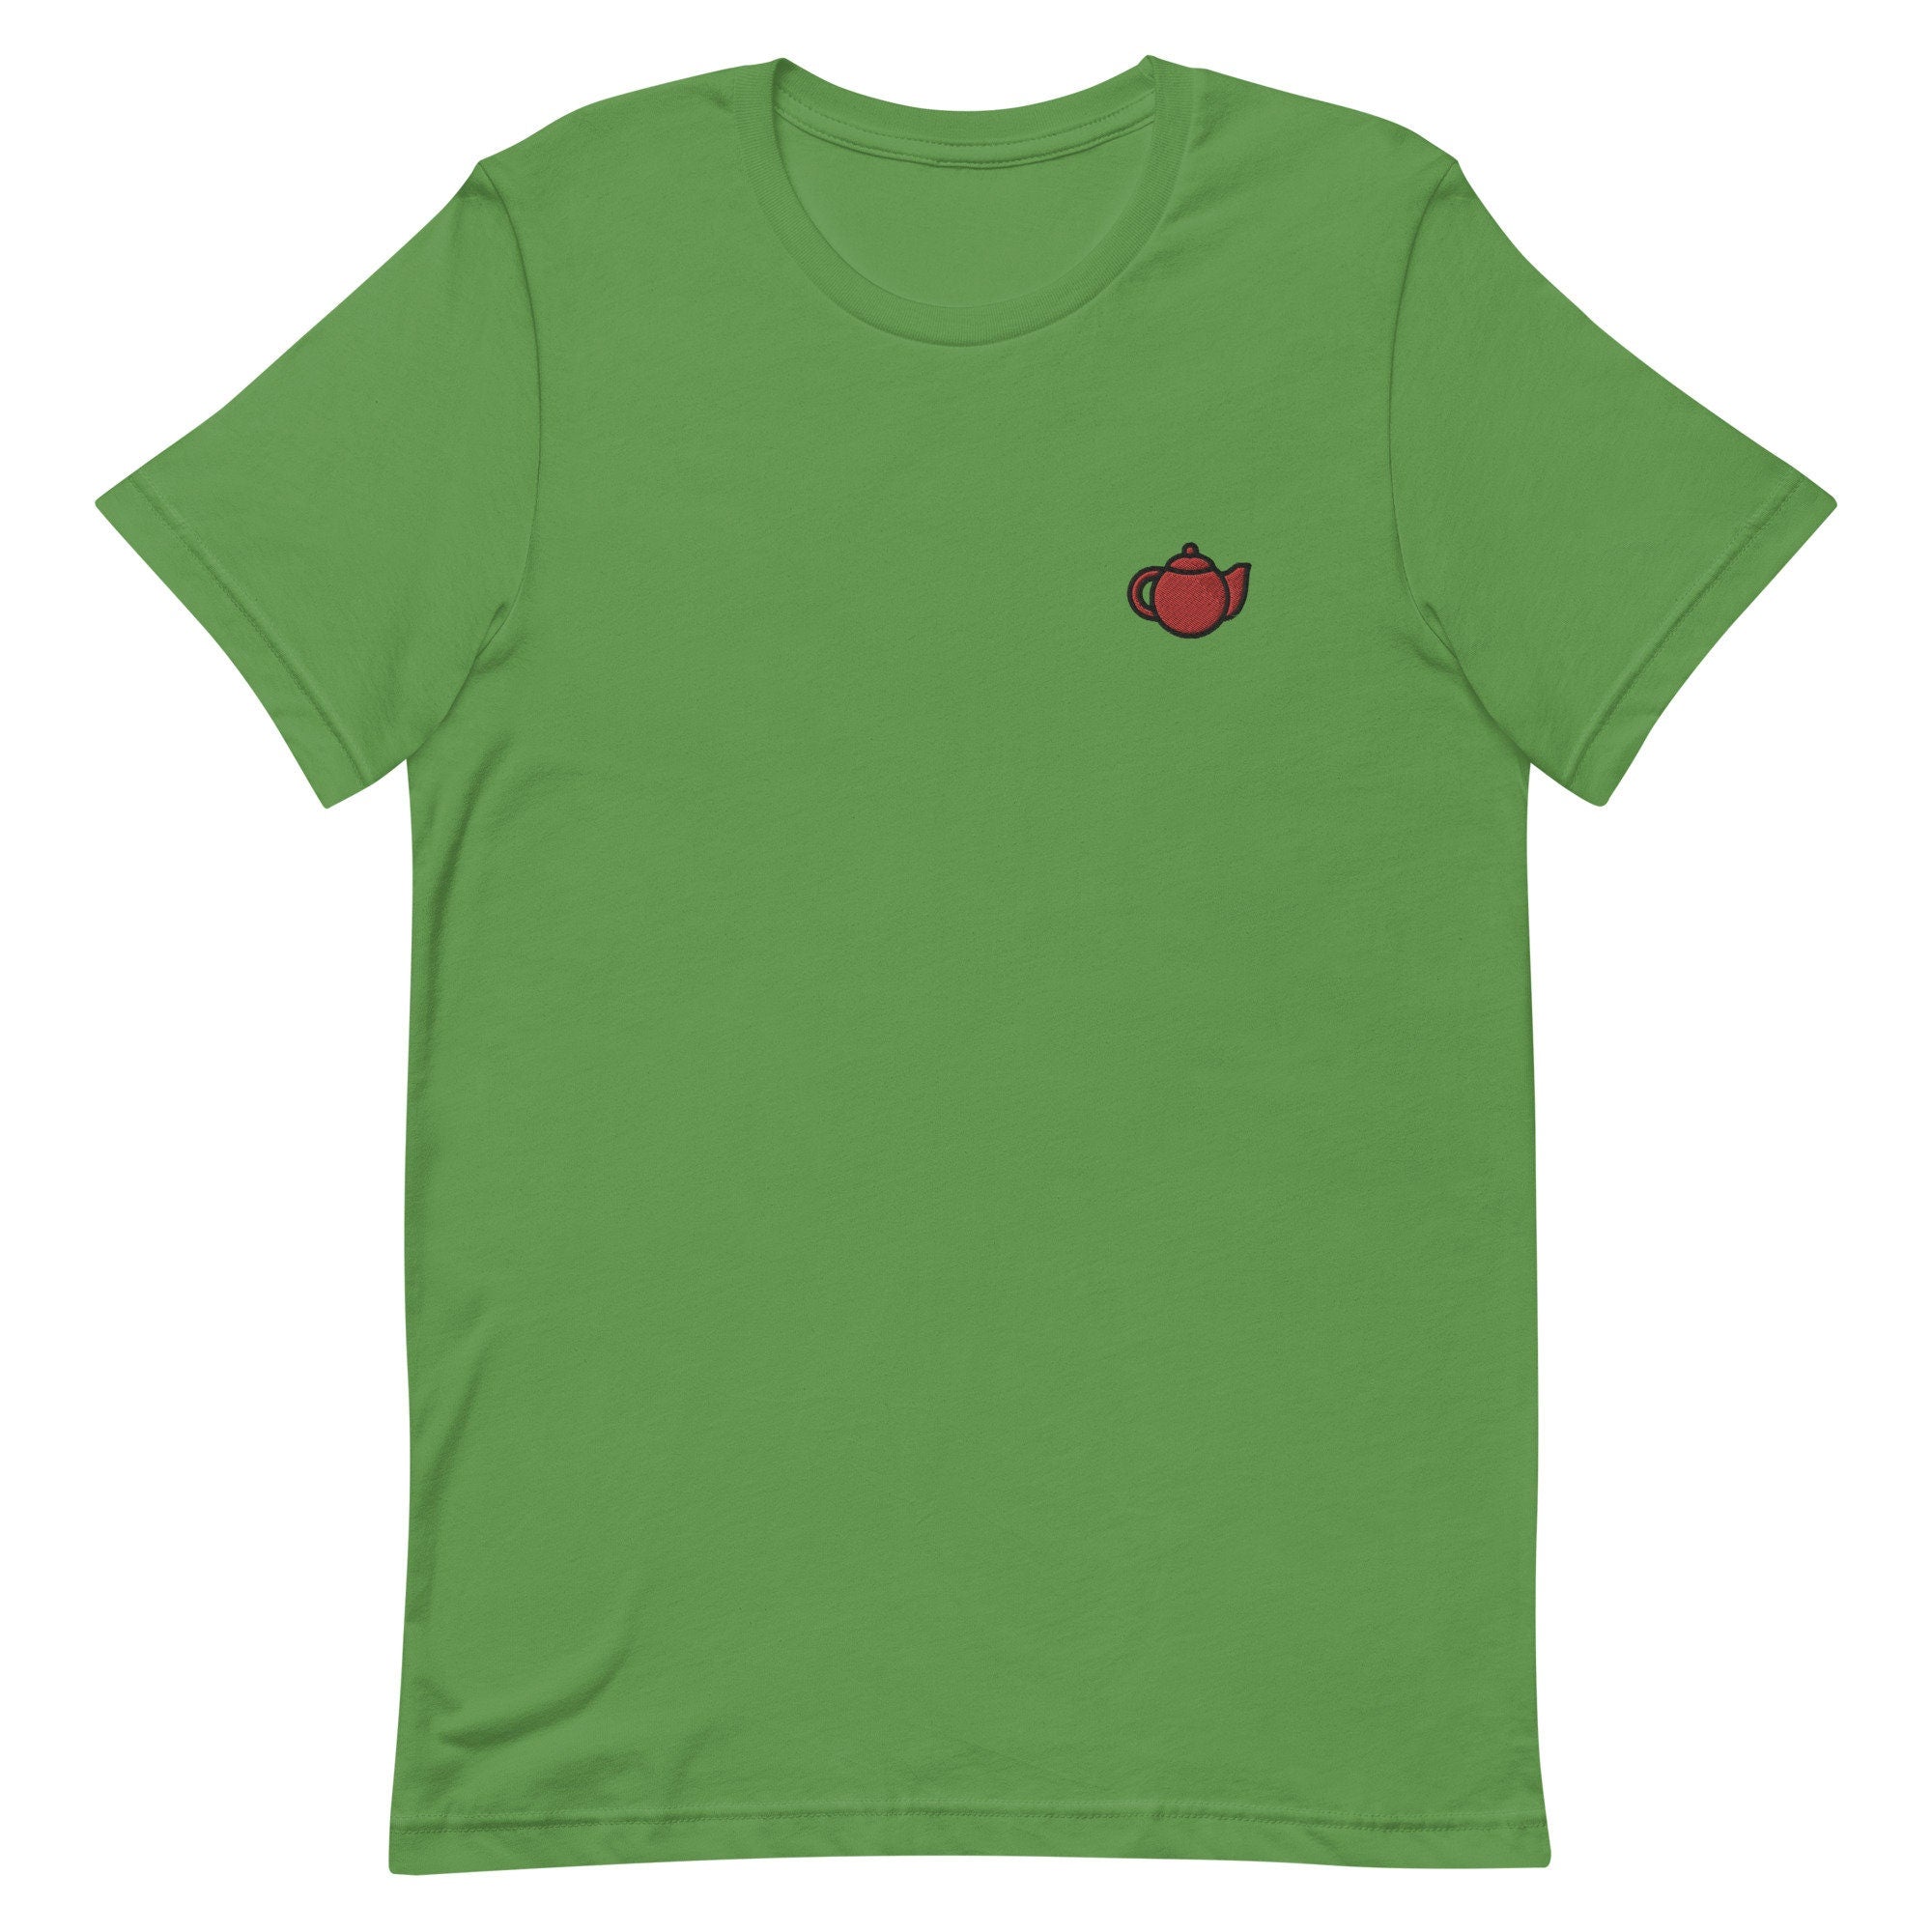 Teapot Premium Men's T-Shirt, Embroidered Men's T-Shirt Gift for Boyfriend, Men's Short Sleeve Shirt - Multiple Colors